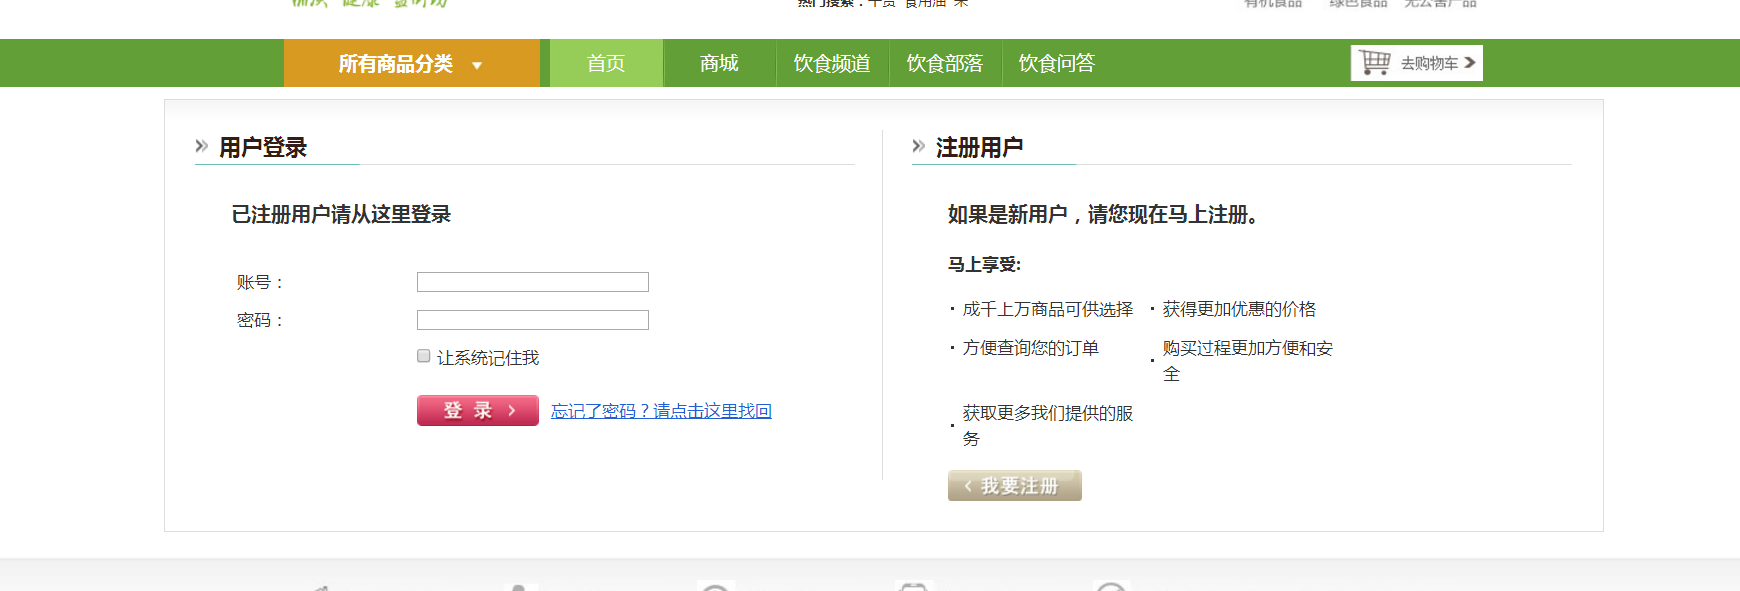 龙腾飞食品行业交易网站案例注册页